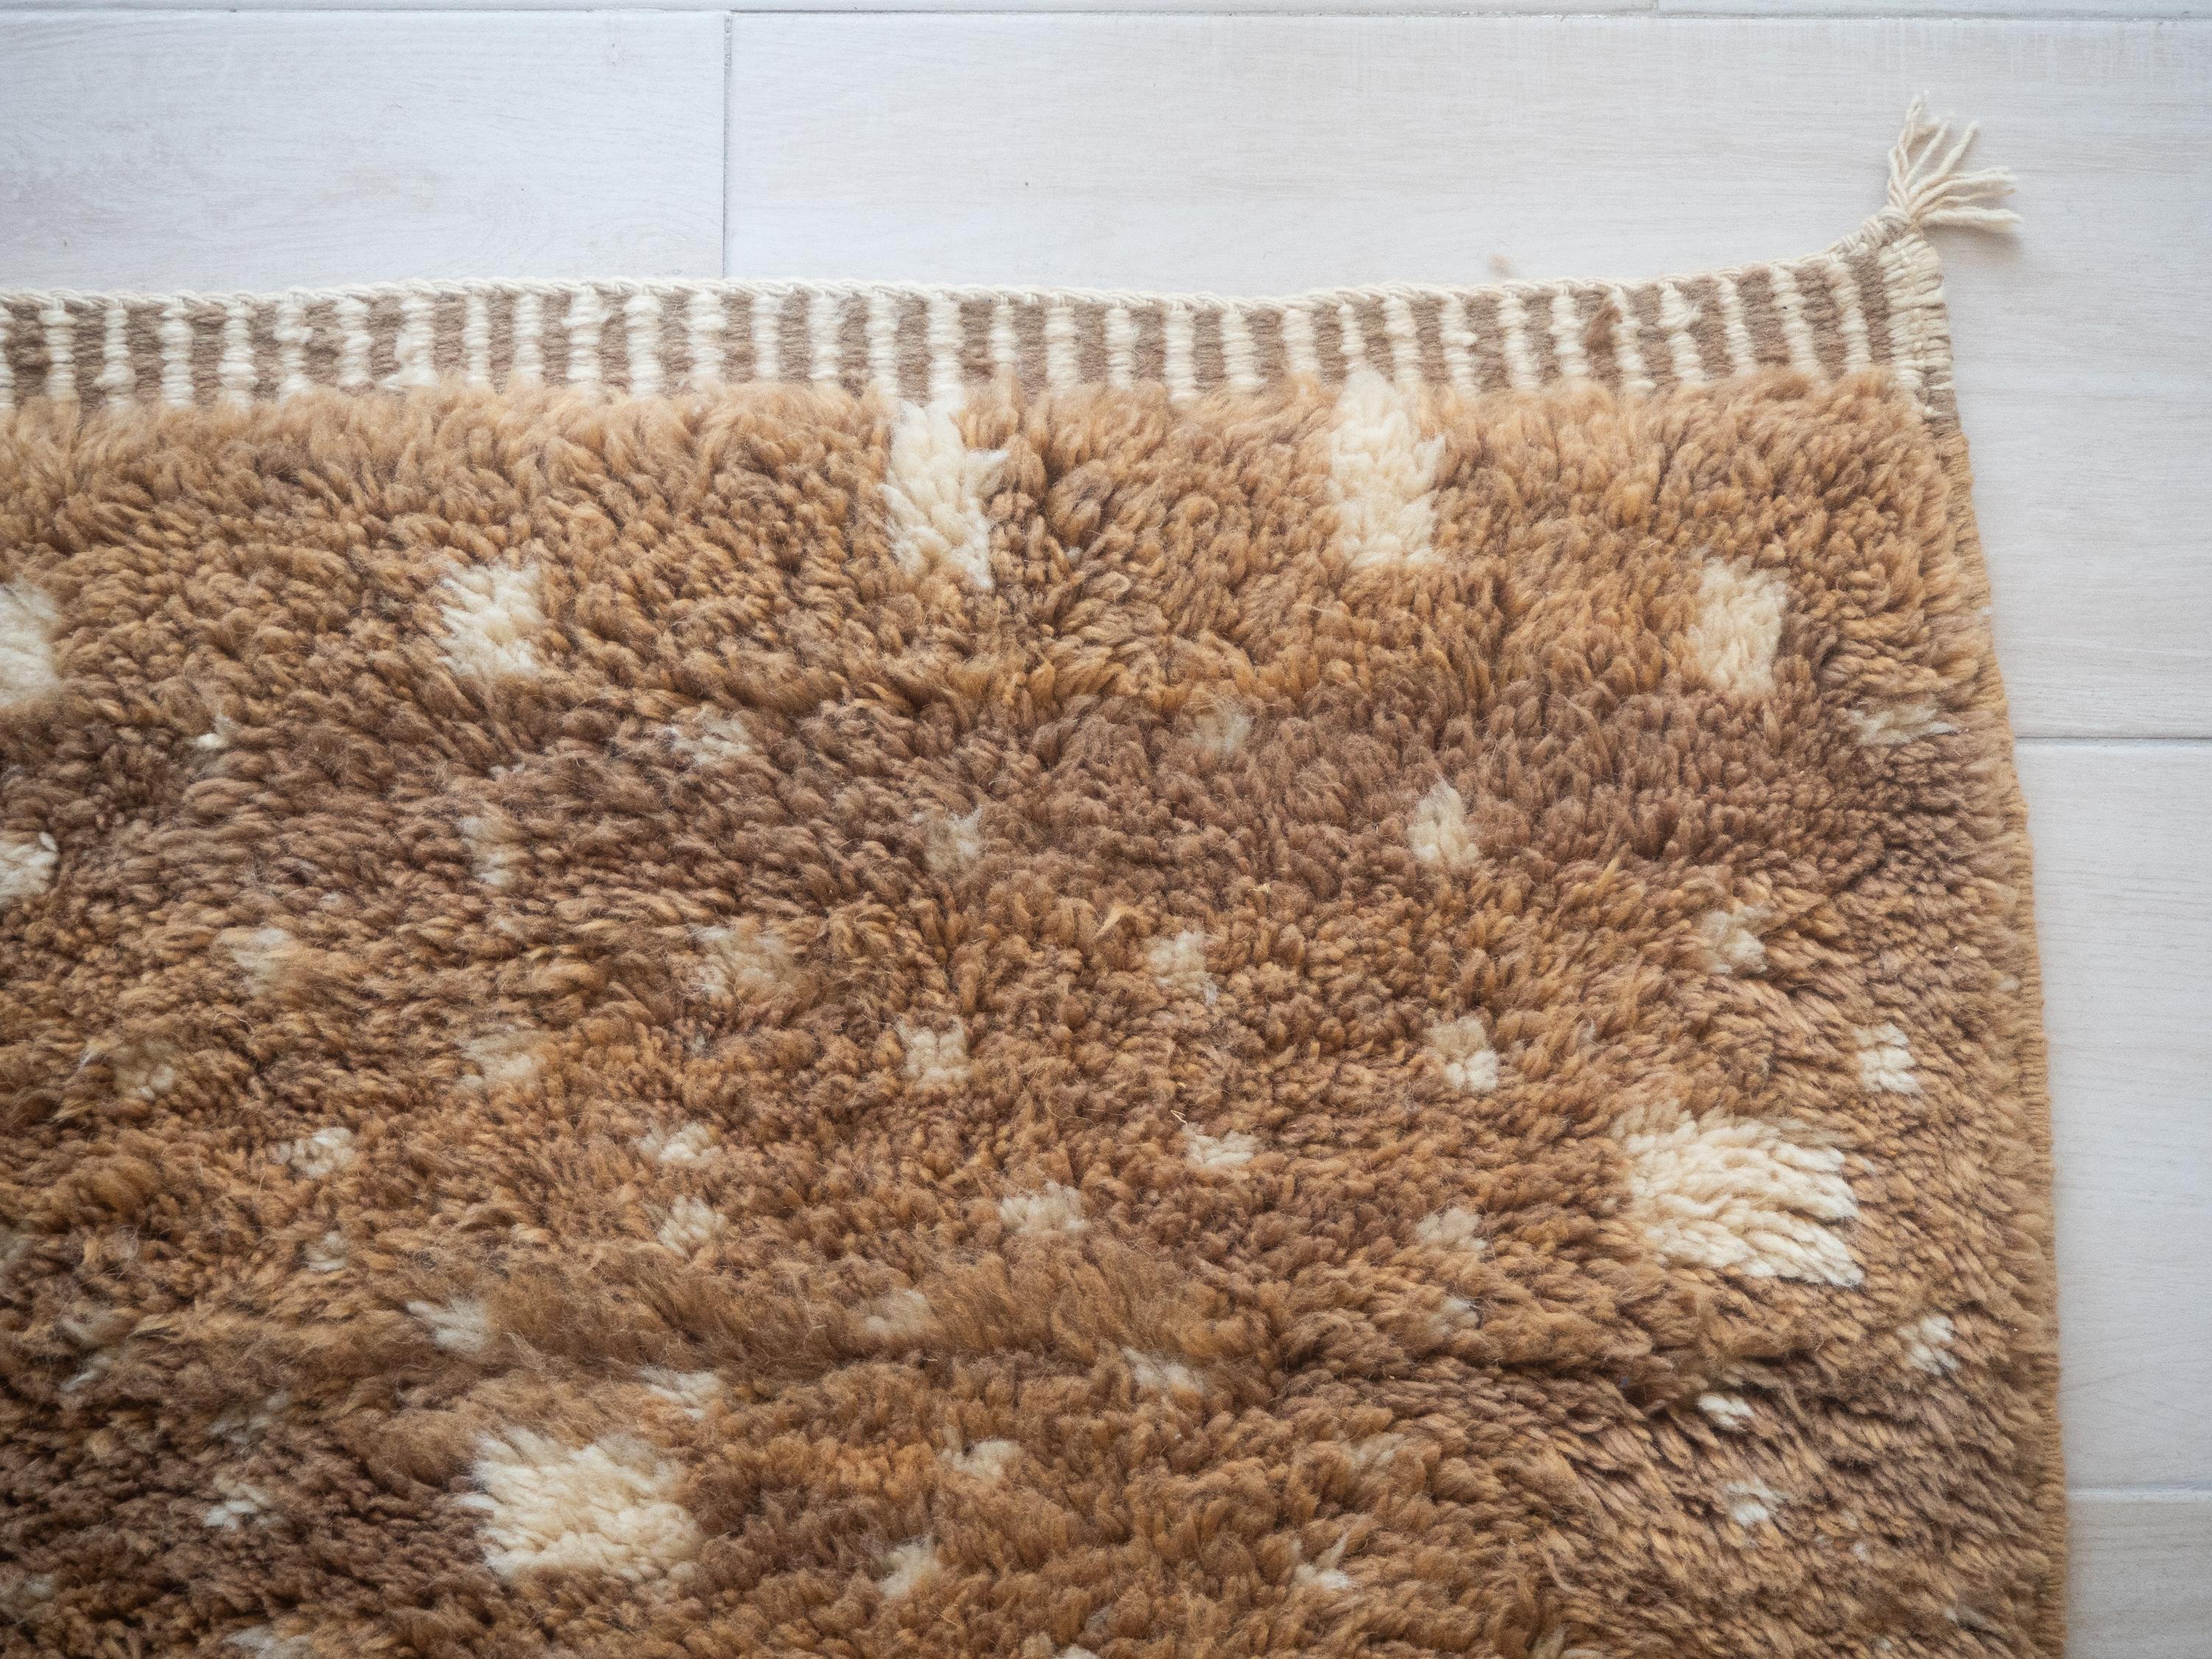 Moroccan Beni Mrirt rug, Tribal Pattern Biege Color Berber rug, In Stock For Sale 4